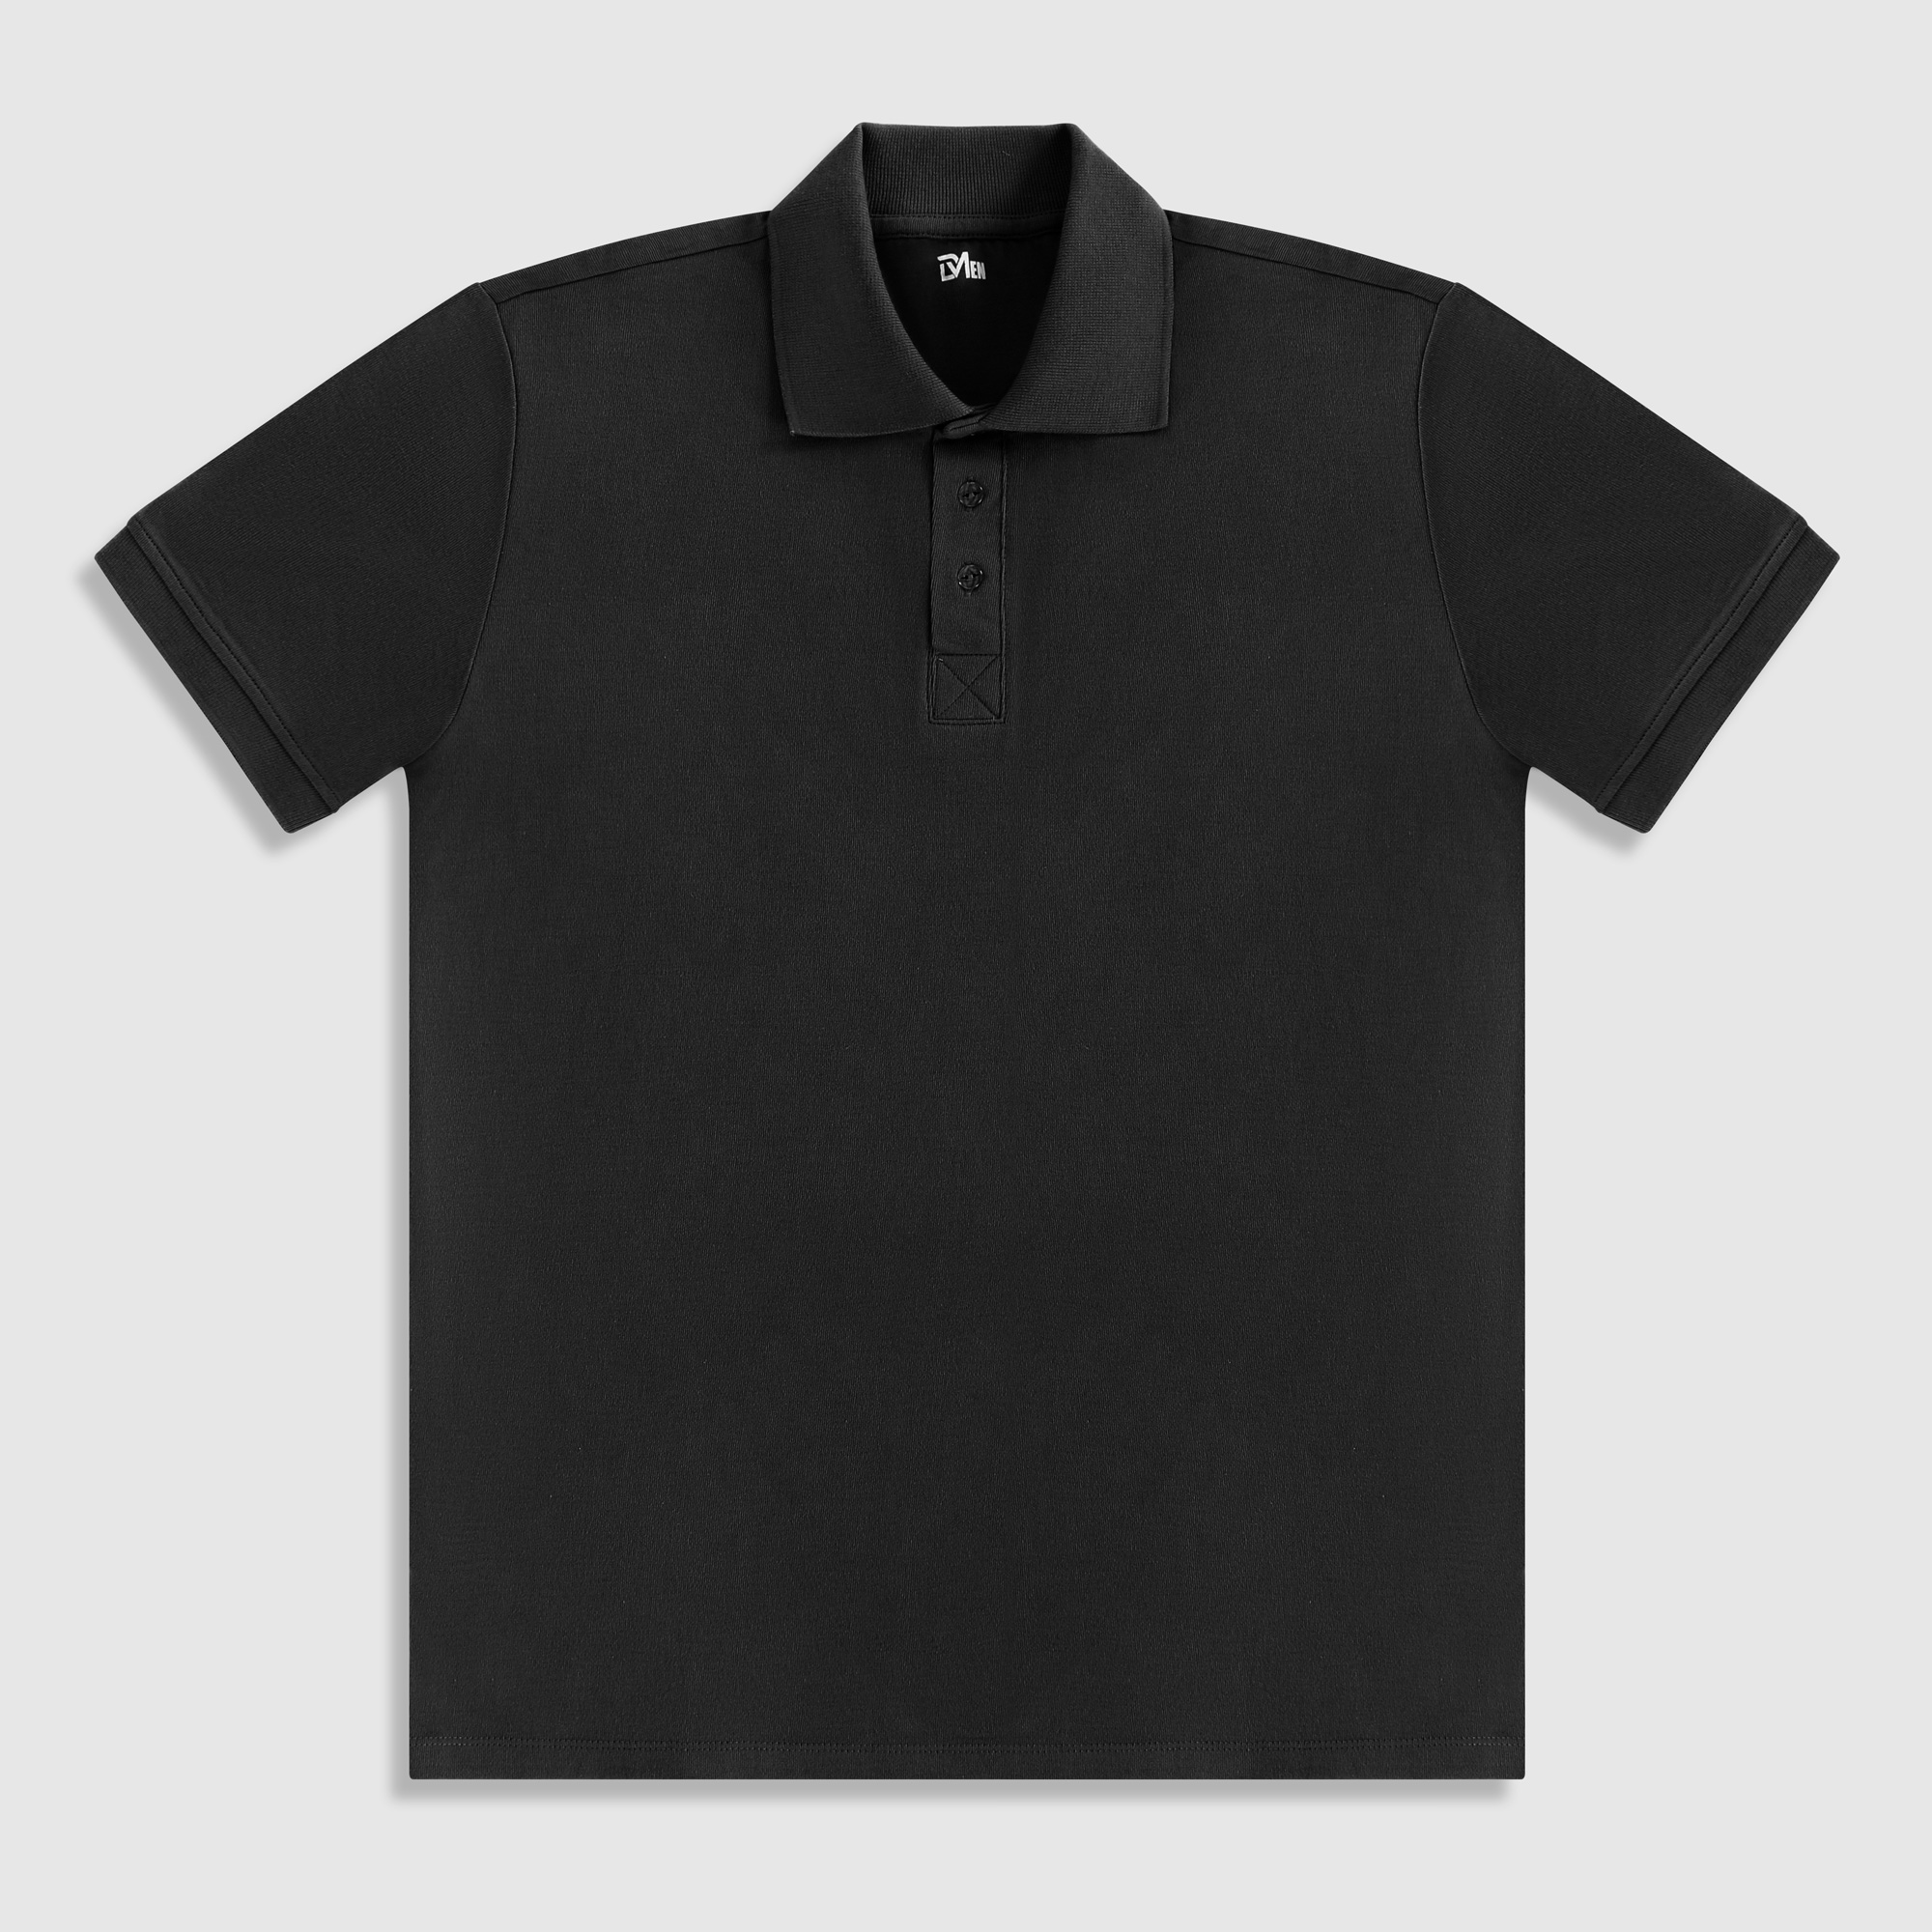 Рубашка мужская Diva Teks поло черная, цвет черный, размер 2XL